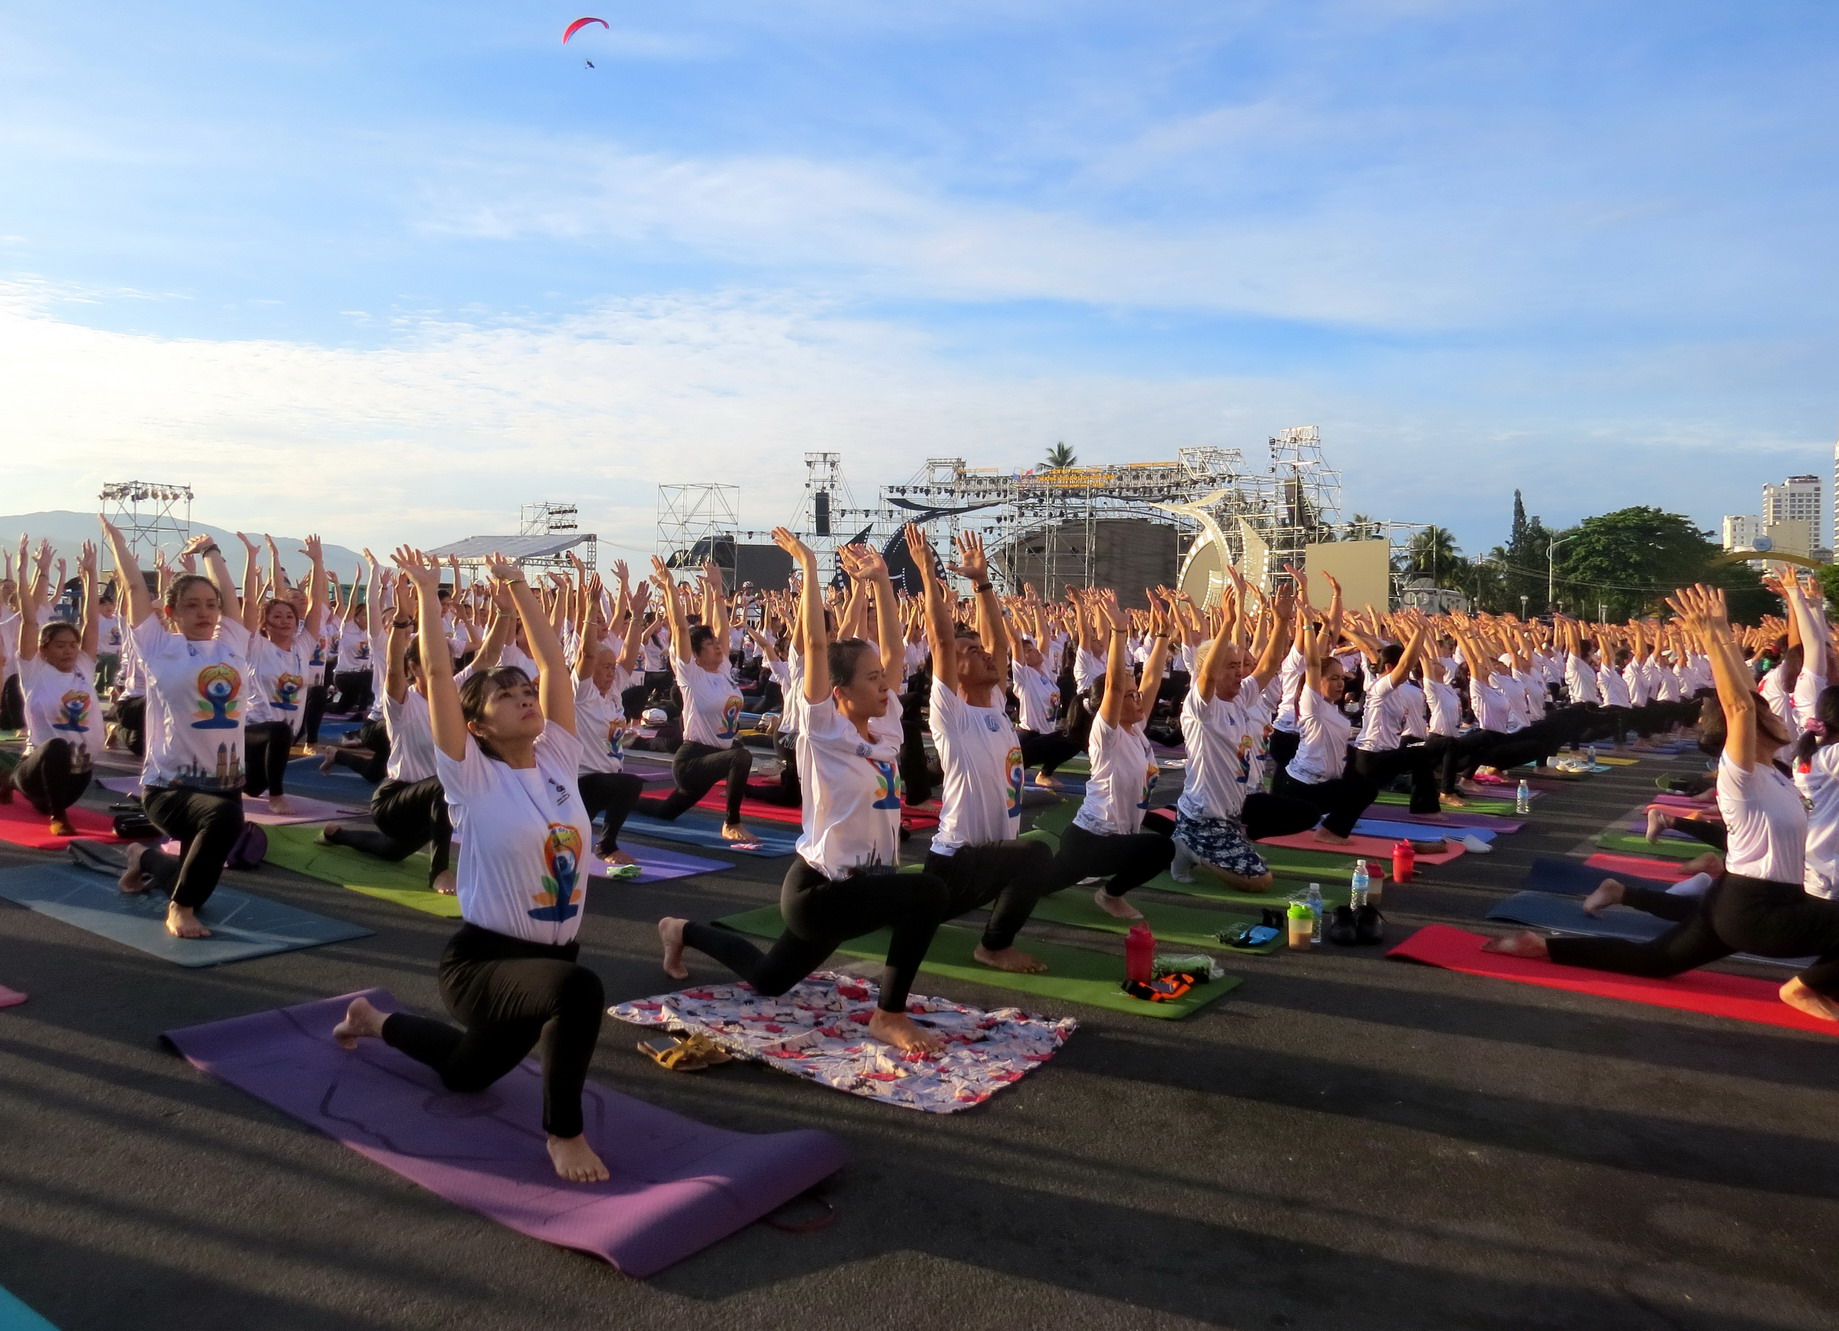 Tham gia đồng diễn Yoga có khoảng 1.200 người là huấn luyện viên, thành viên của các câu lạc bộ Yoga trên địa bàn tỉnh Khánh Hòa và 4 tỉnh, thành phố khác: Hồ Chí Minh, Bà Rịa - Vũng Tàu, Bình Thuận, Ninh Thuận, Phú Yên